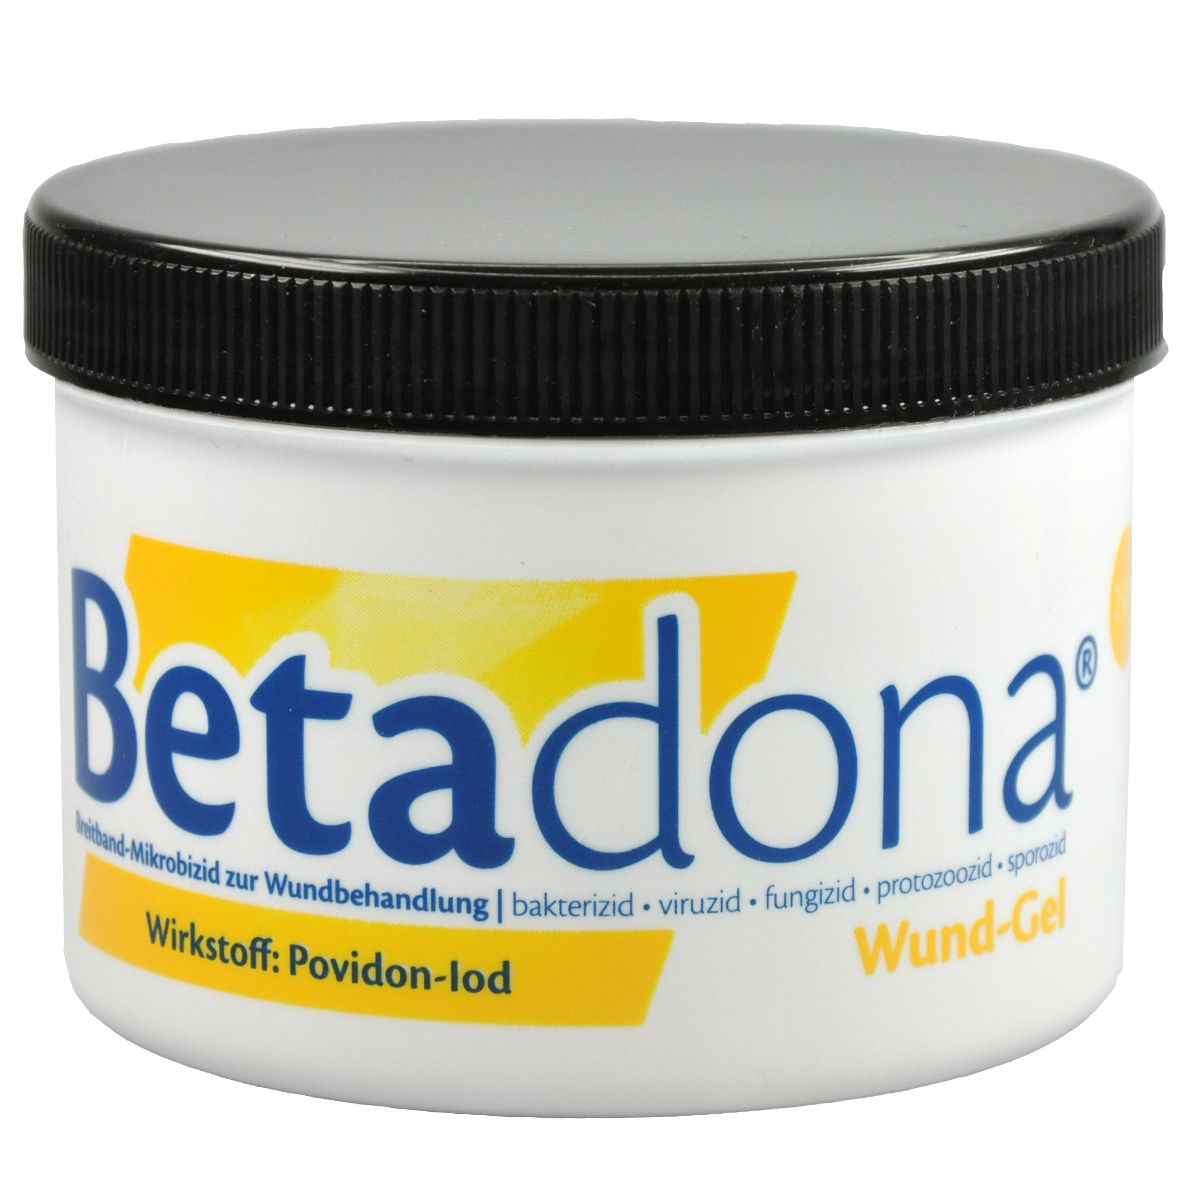 Abbildung Betadona Wund - Gel